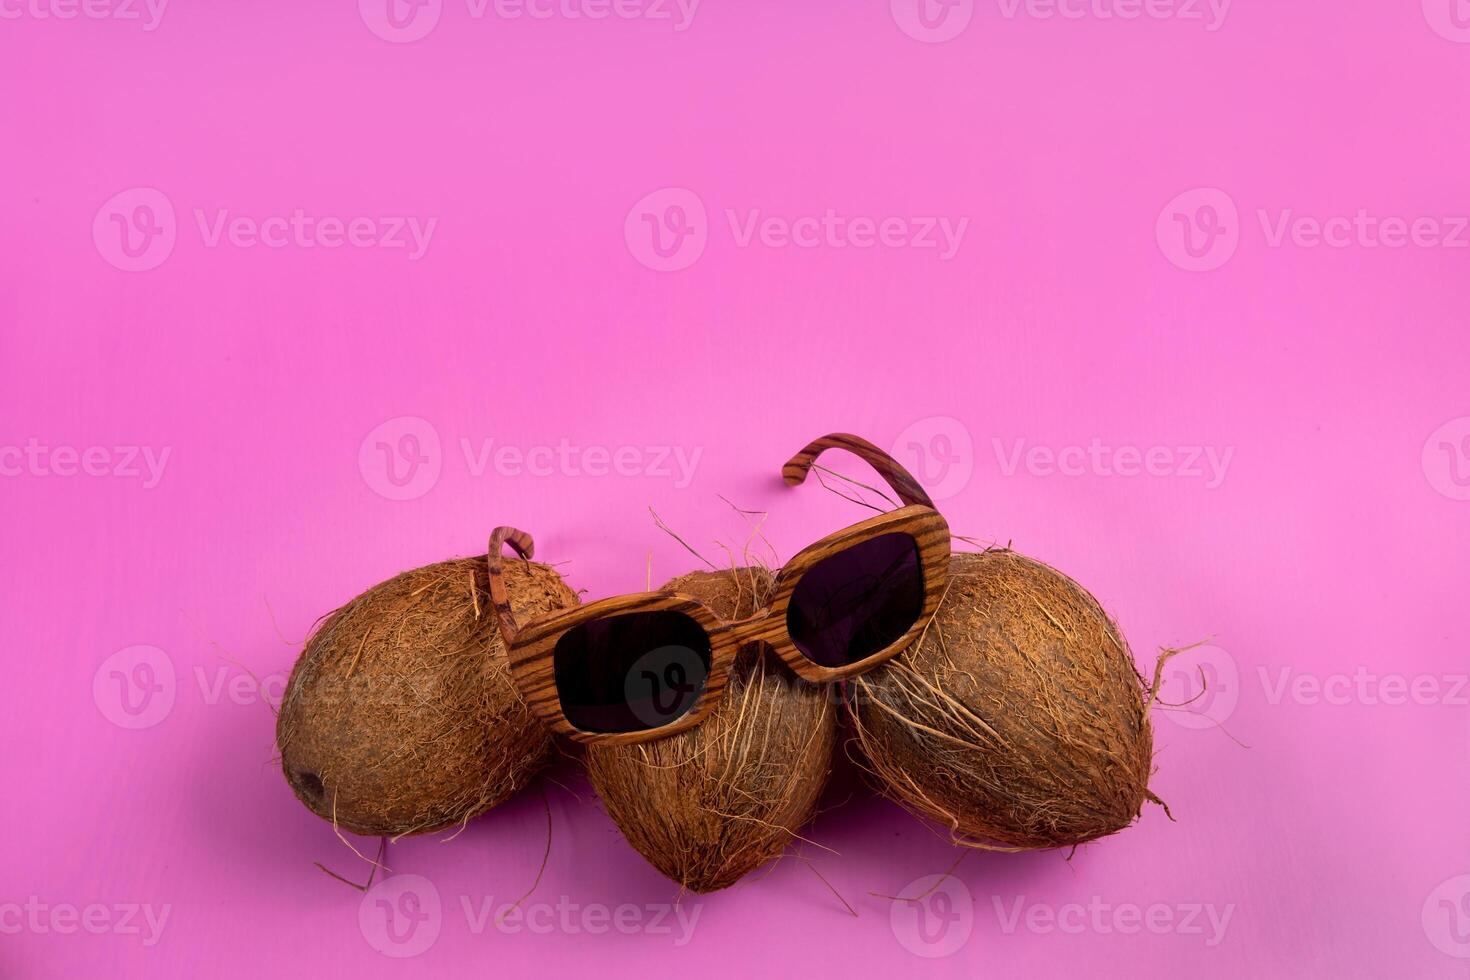 drei ganze Kokosnüsse und hölzern Brille auf ein Rosa Hintergrund foto